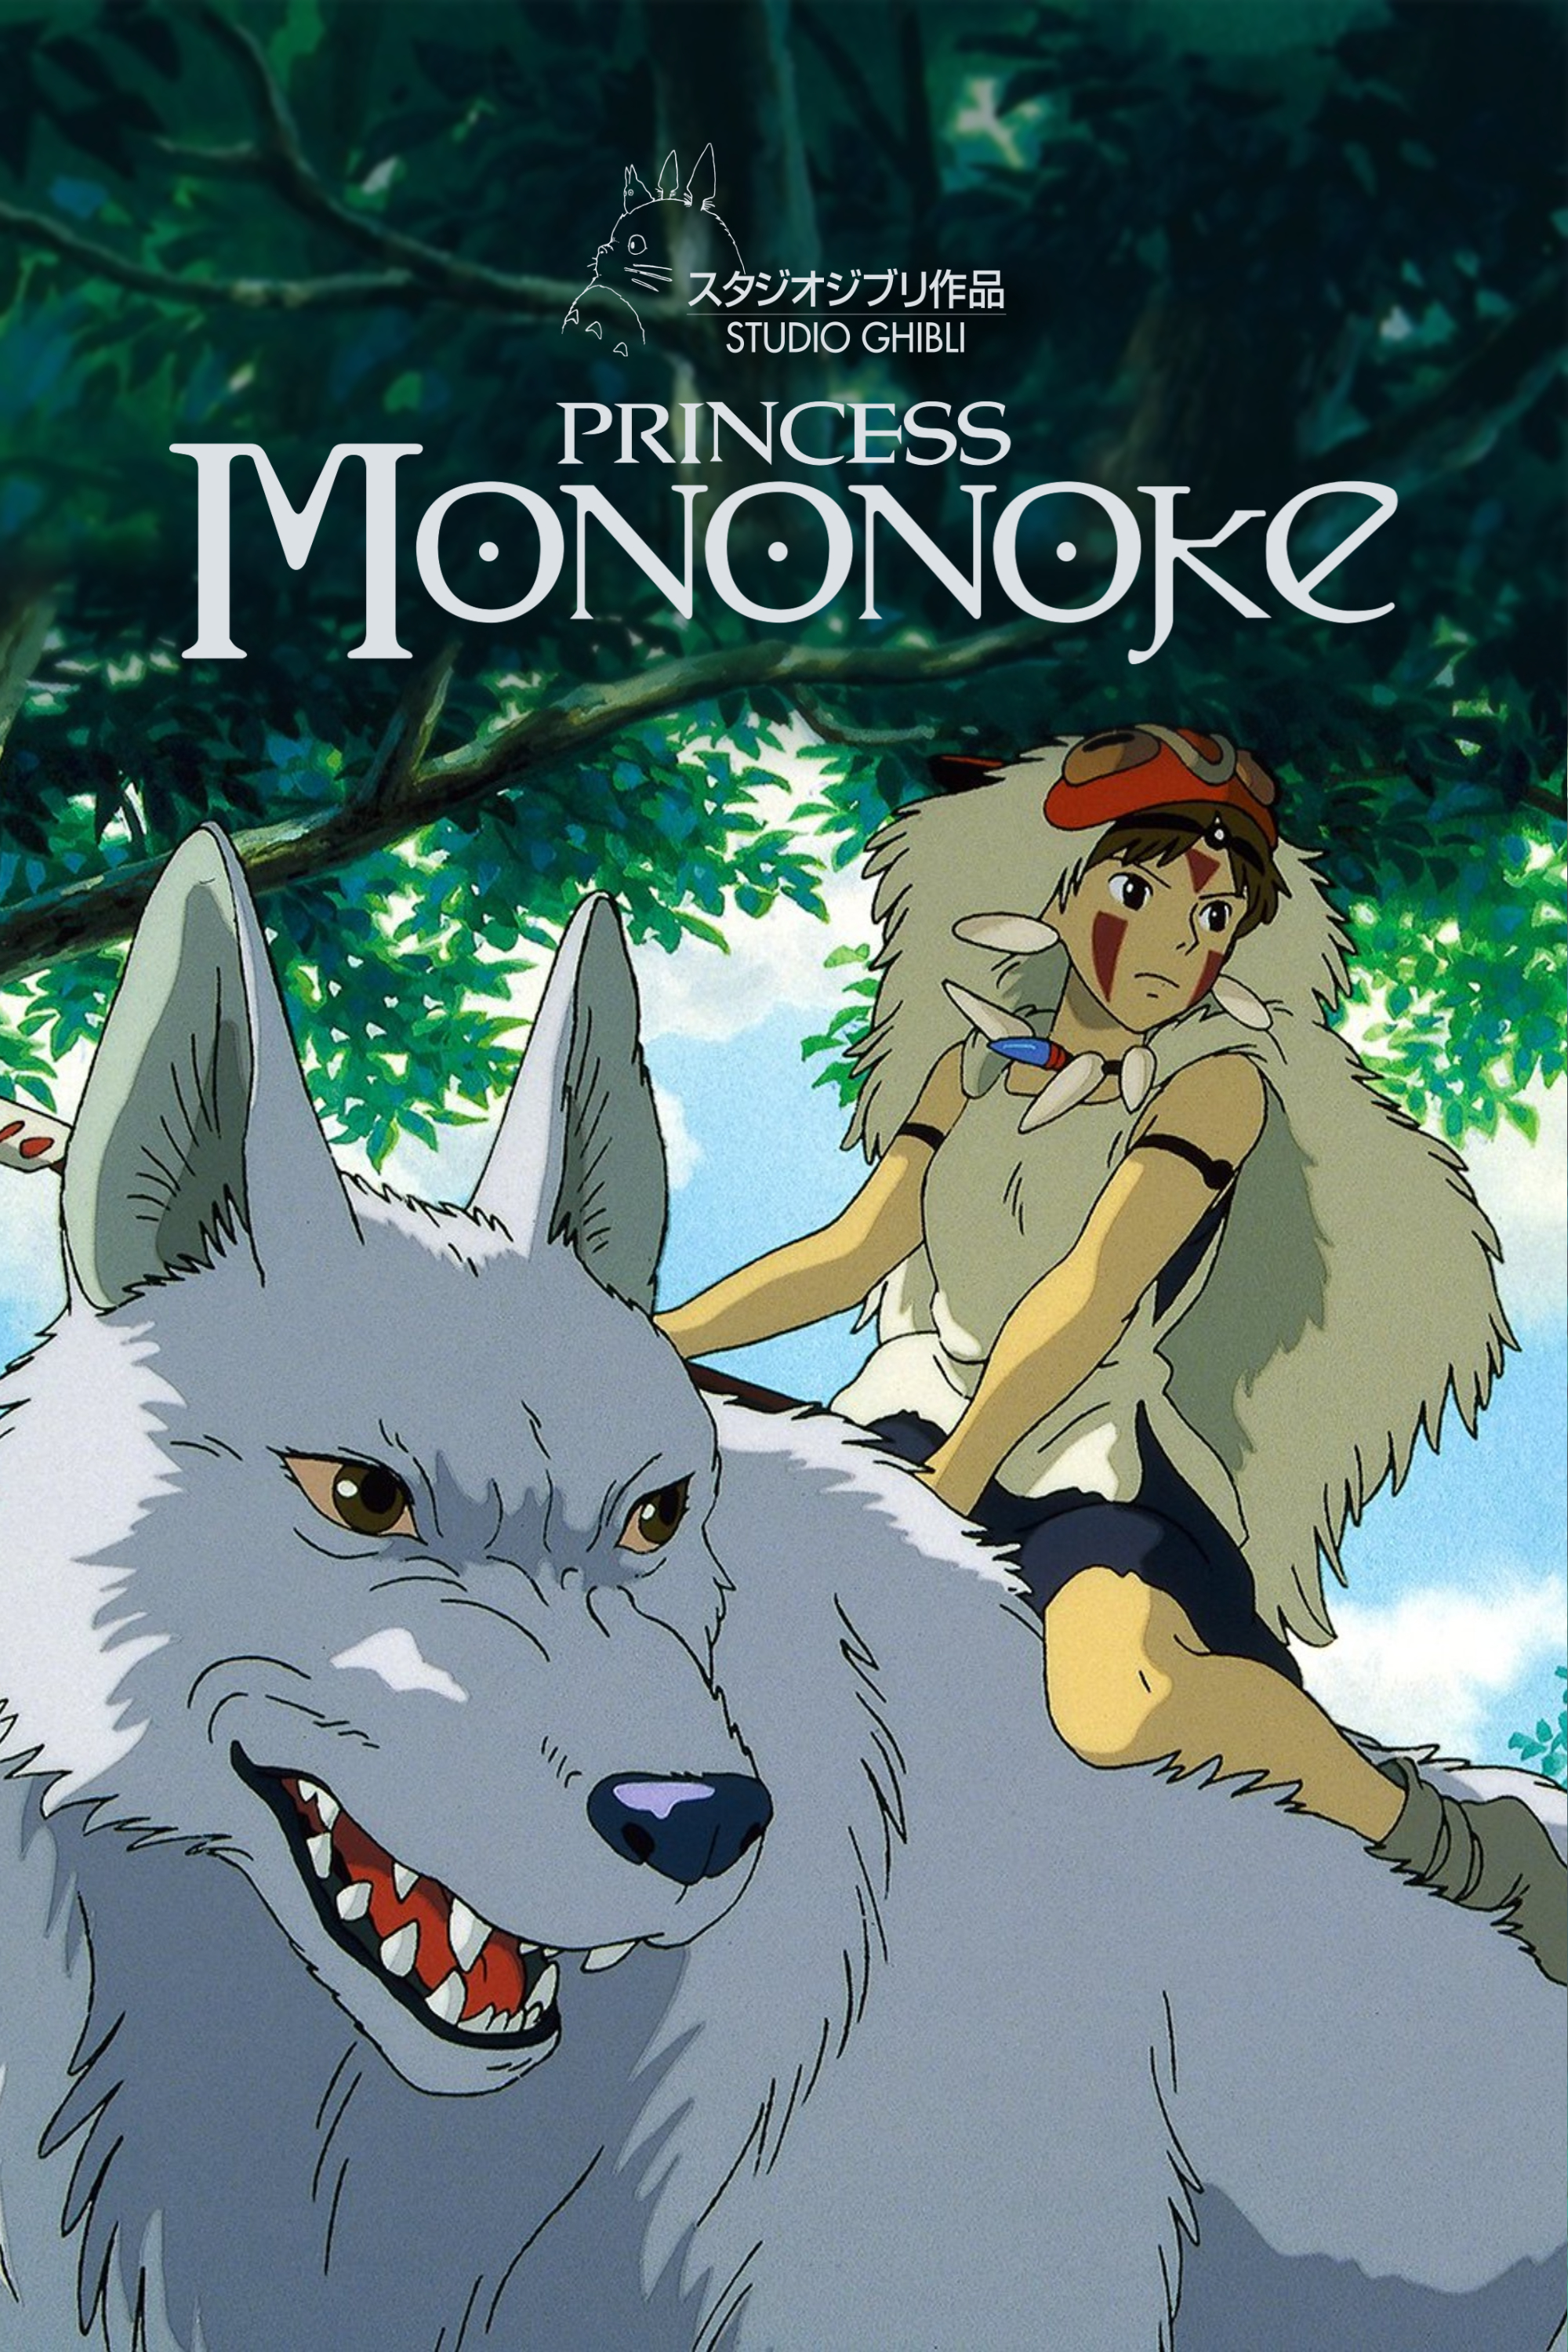 princess mononoke english dub full movie online